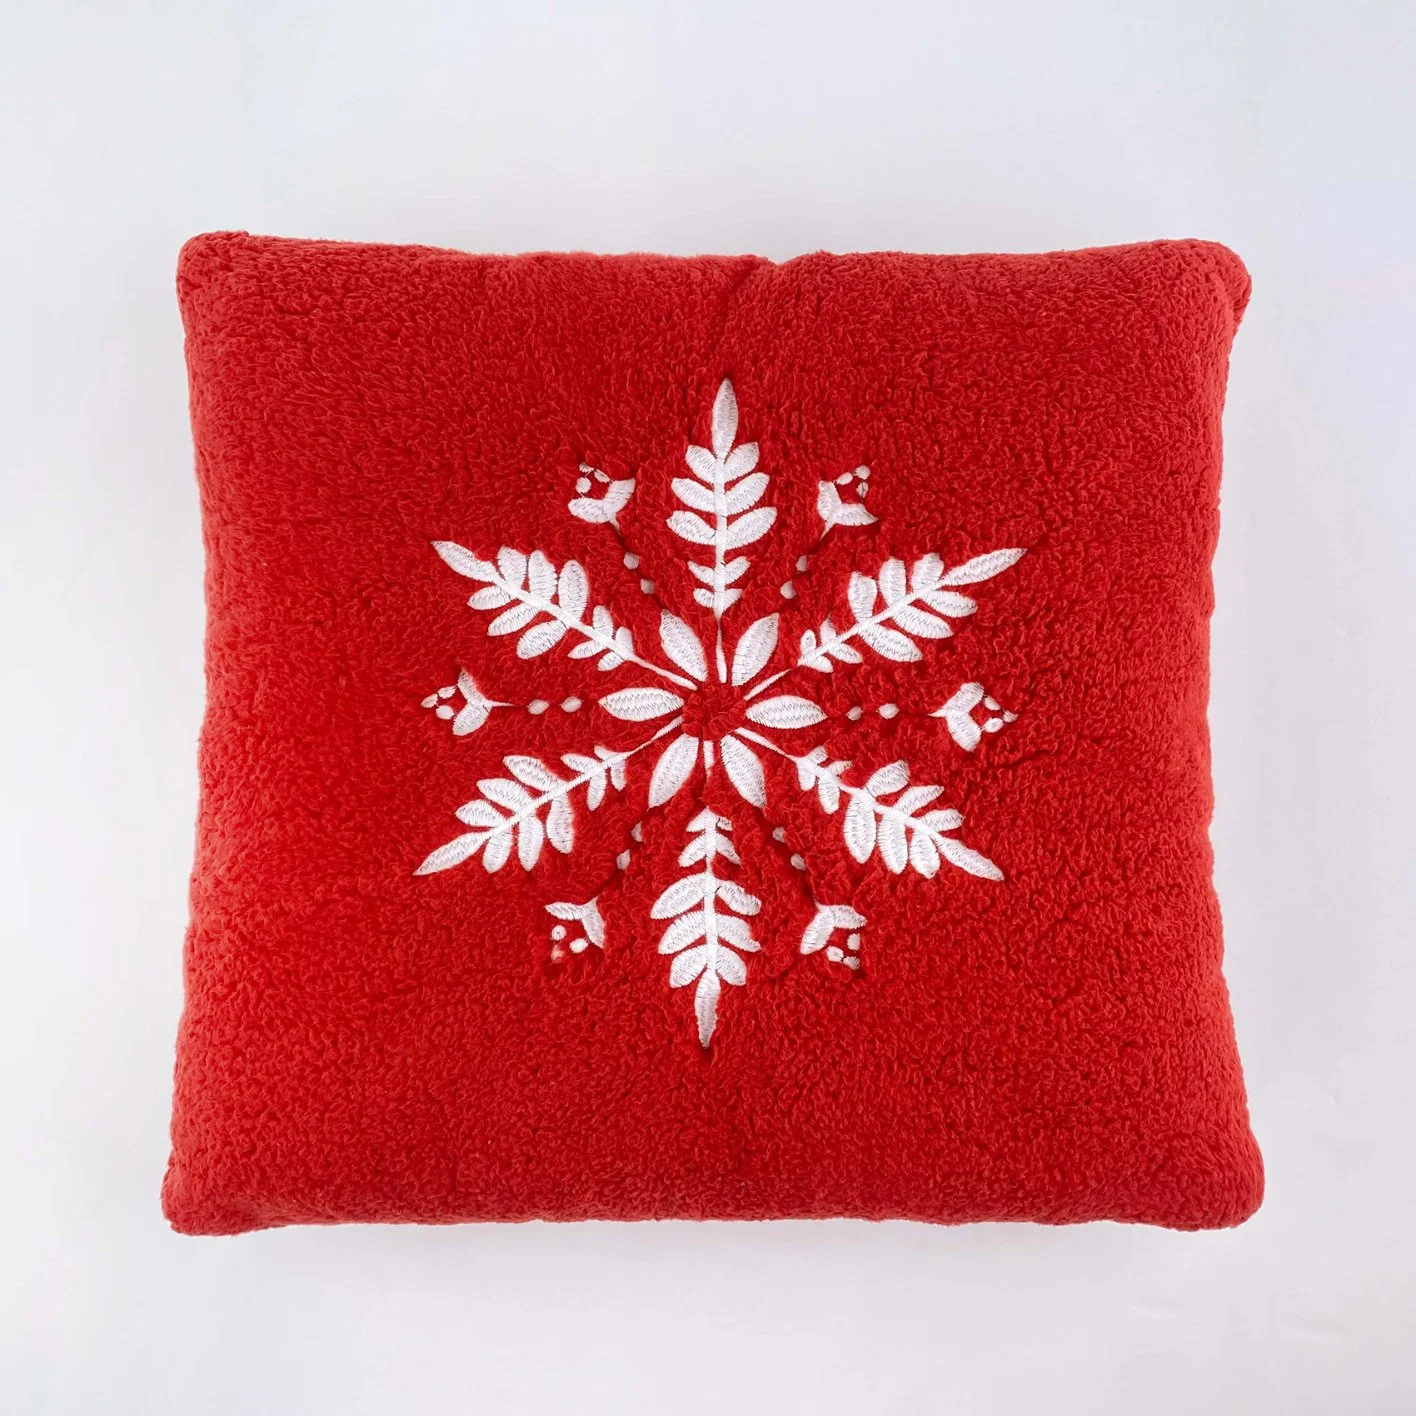 La Navidad en rojo cubre almohada bordado Teddy Fleece de pieles de copo de nieve de poliéster Sofá Dormitorios Alquiler de funda de almohada para cama 24"x24 pulgadas cojín Decoración